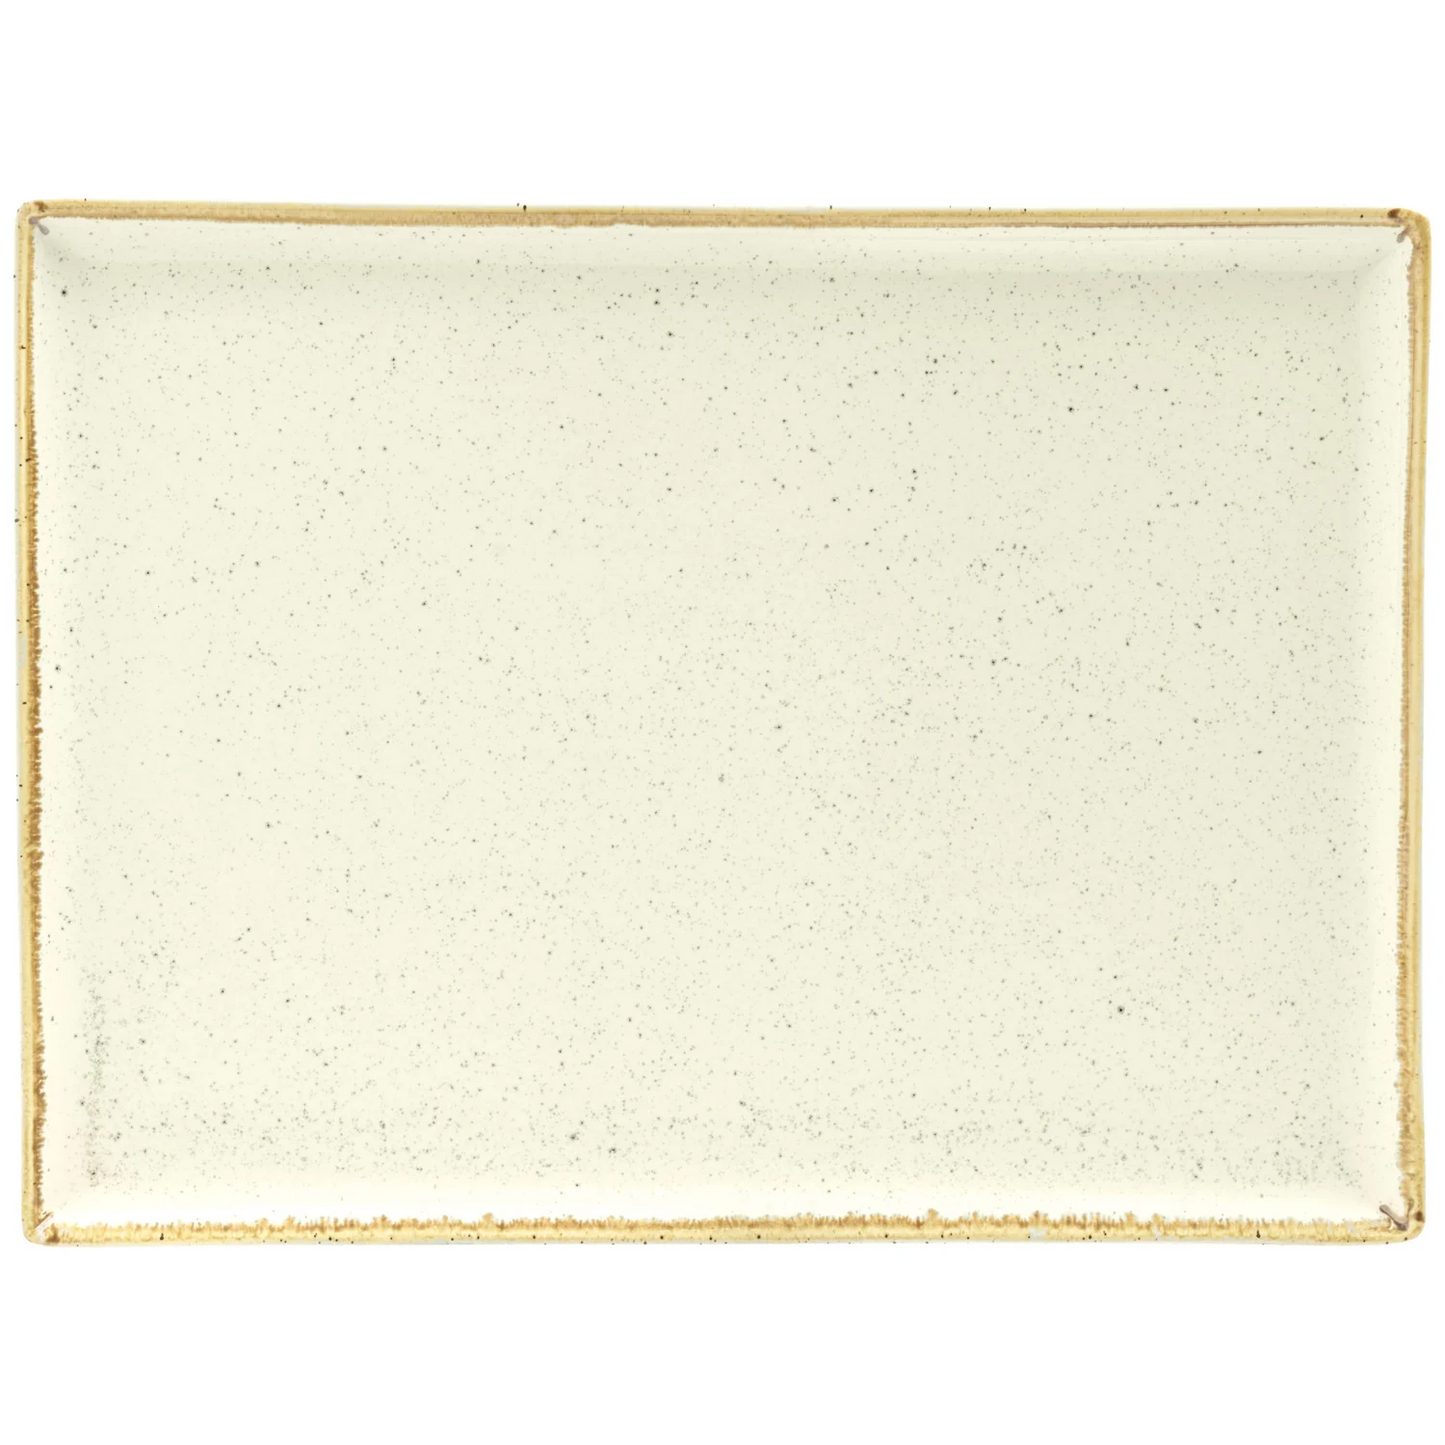 Platter Sidina rectangular